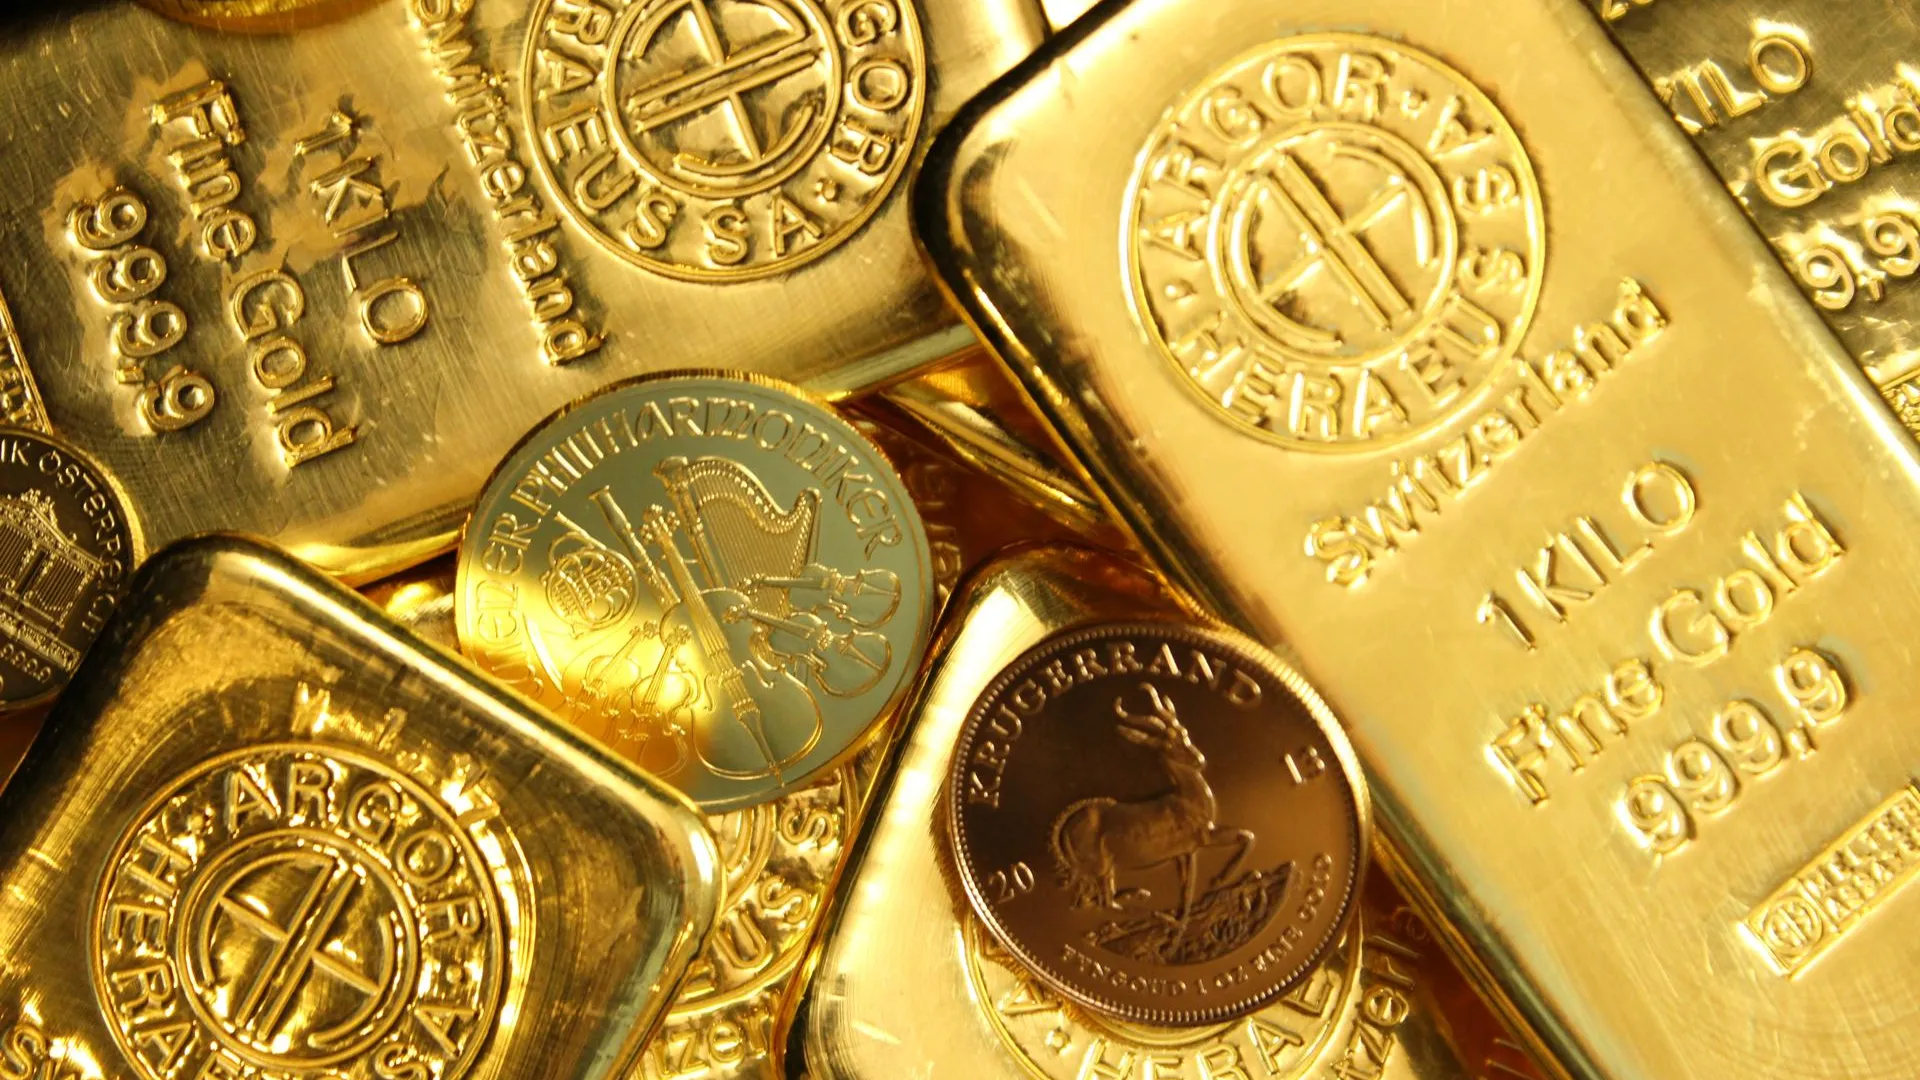 Эксперт Худалов спрогнозировал рекордные цены на золото из-за инфляции в США